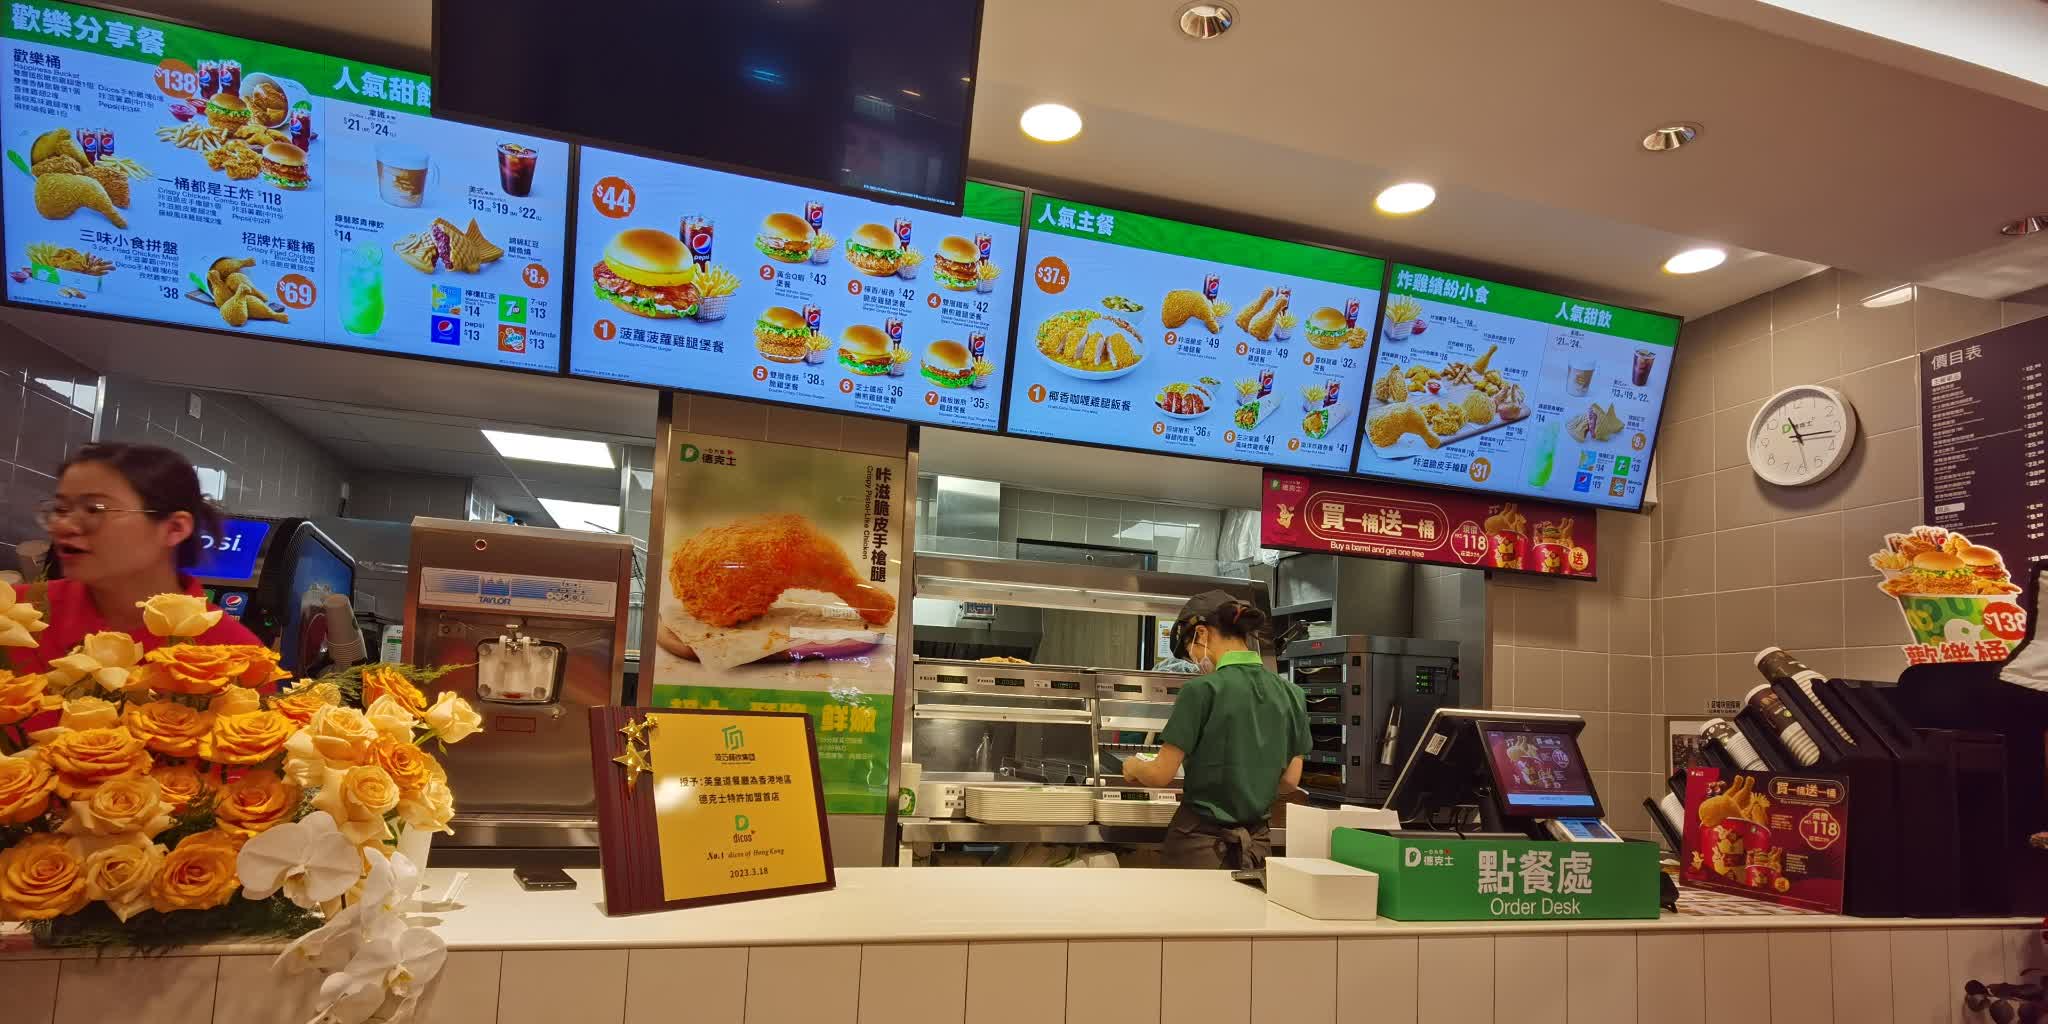 （多圖）炸雞快餐店「德克士」香港首家分店入駐北角